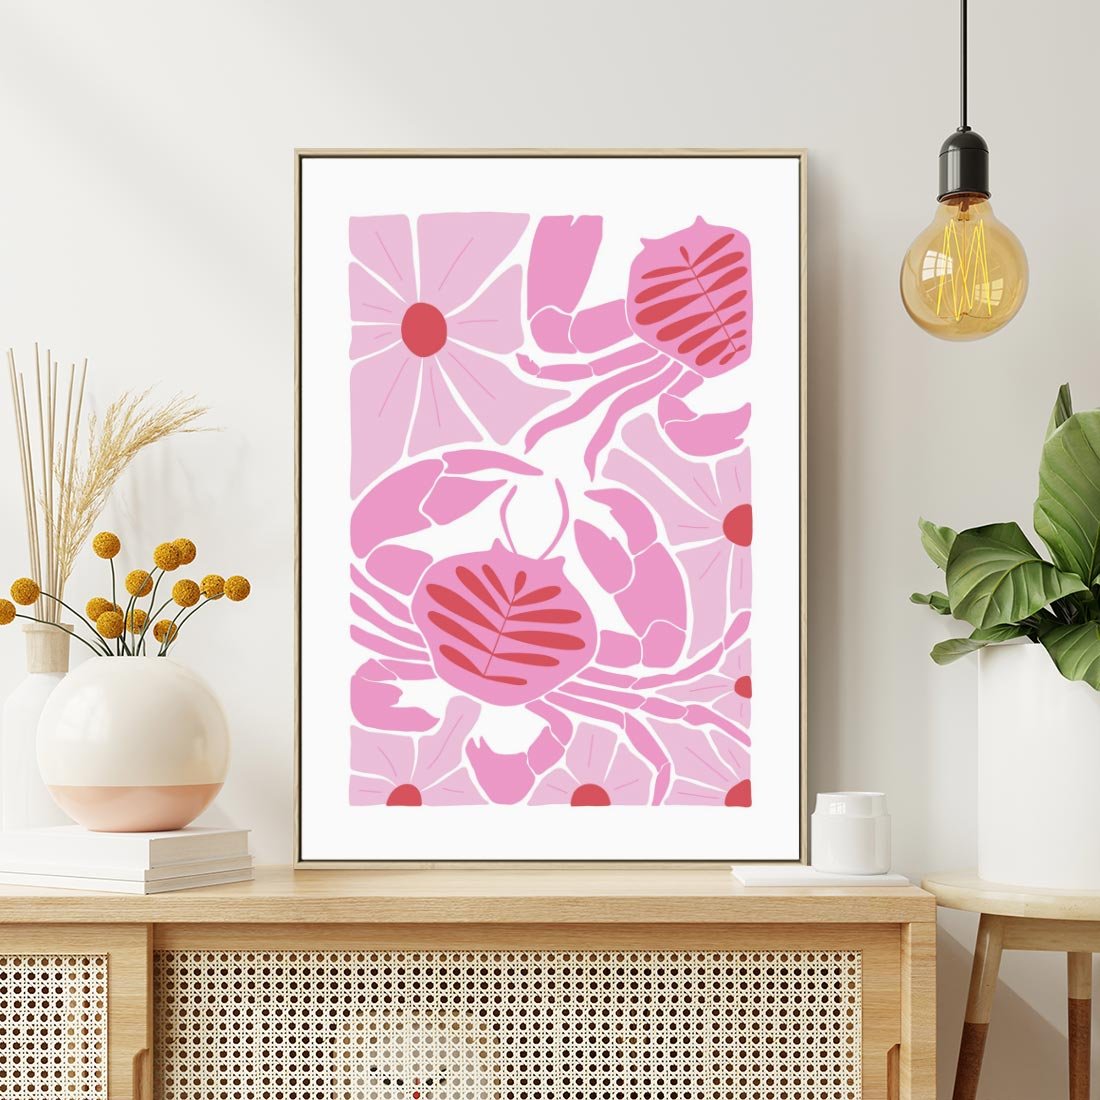 Obraz w ramie 50x70 - Roztańczone Kraby - różowe kwiaty i kraby, abstrakcyjna kompozycja - rama drewno